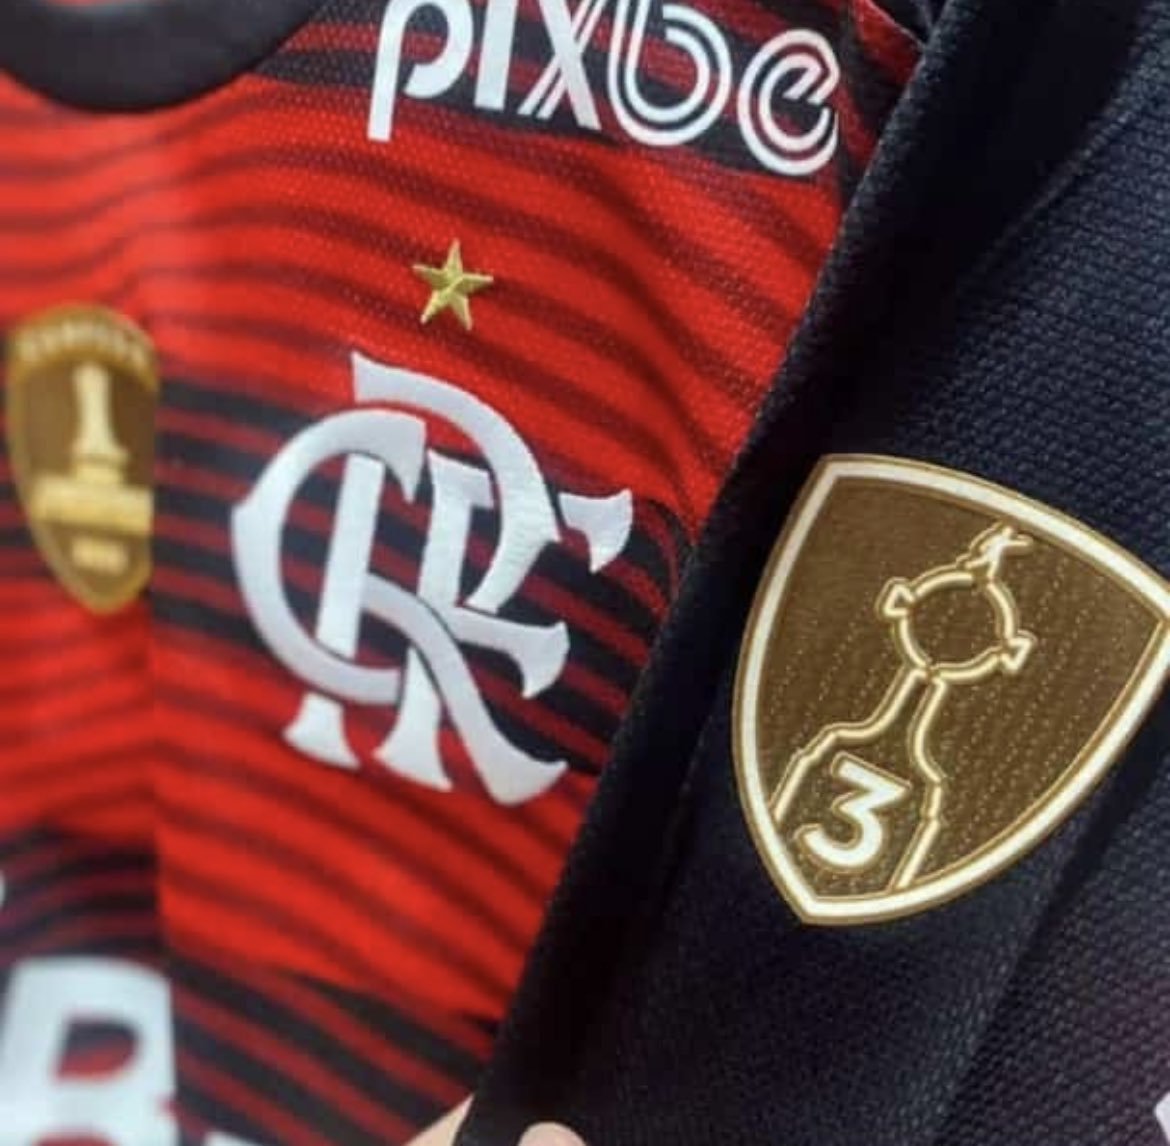 motta¹² on X: Wallpaper camisa do Flamengo com novo patrocínio